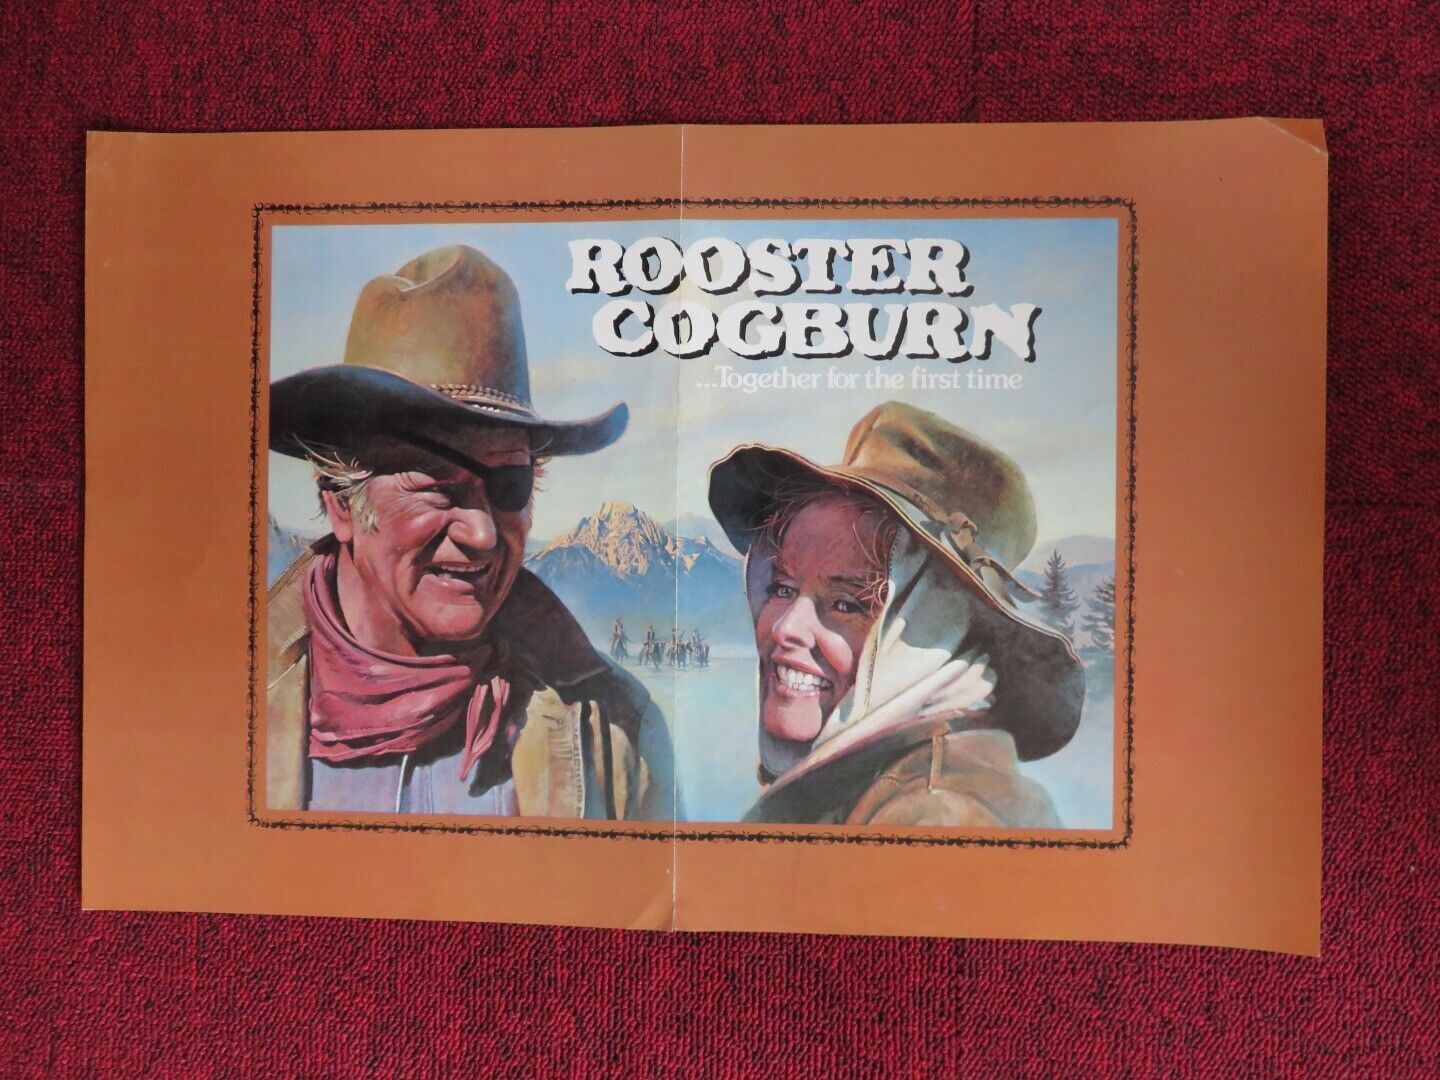 ROOSTER COGBURN U.S PRESS COVER  (12" X 18") POSTER JOHN WAYNE KATHARINE HEPBURN